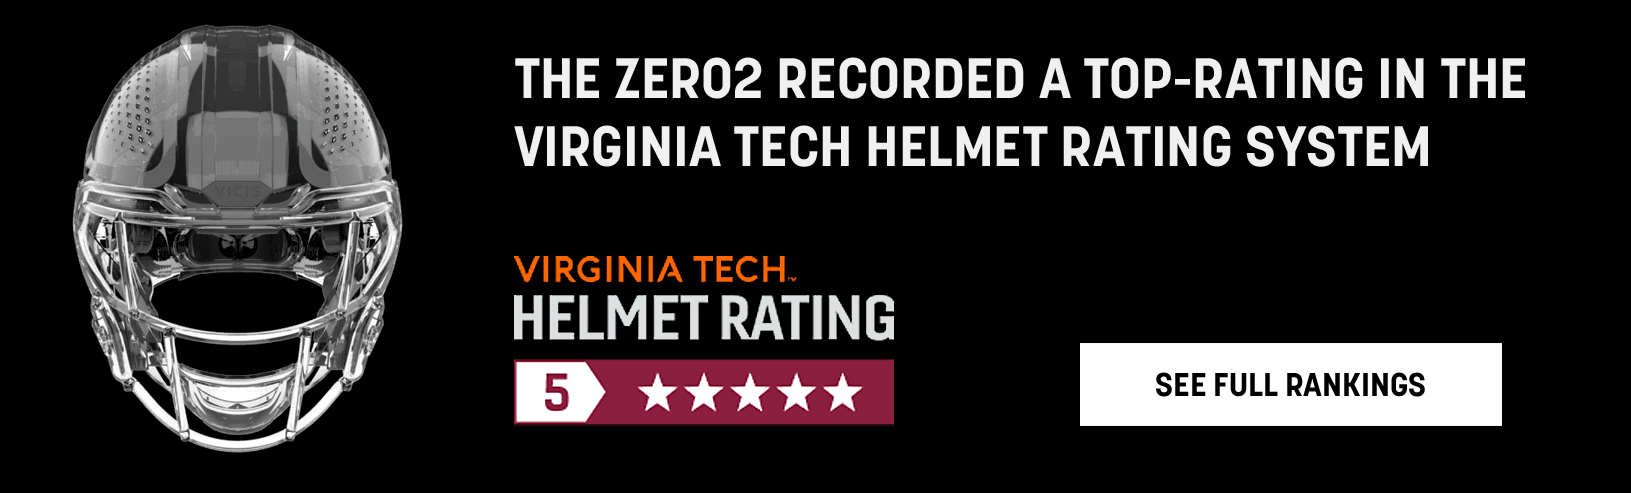 Top Rated Virginia Tech Helmet Ratings